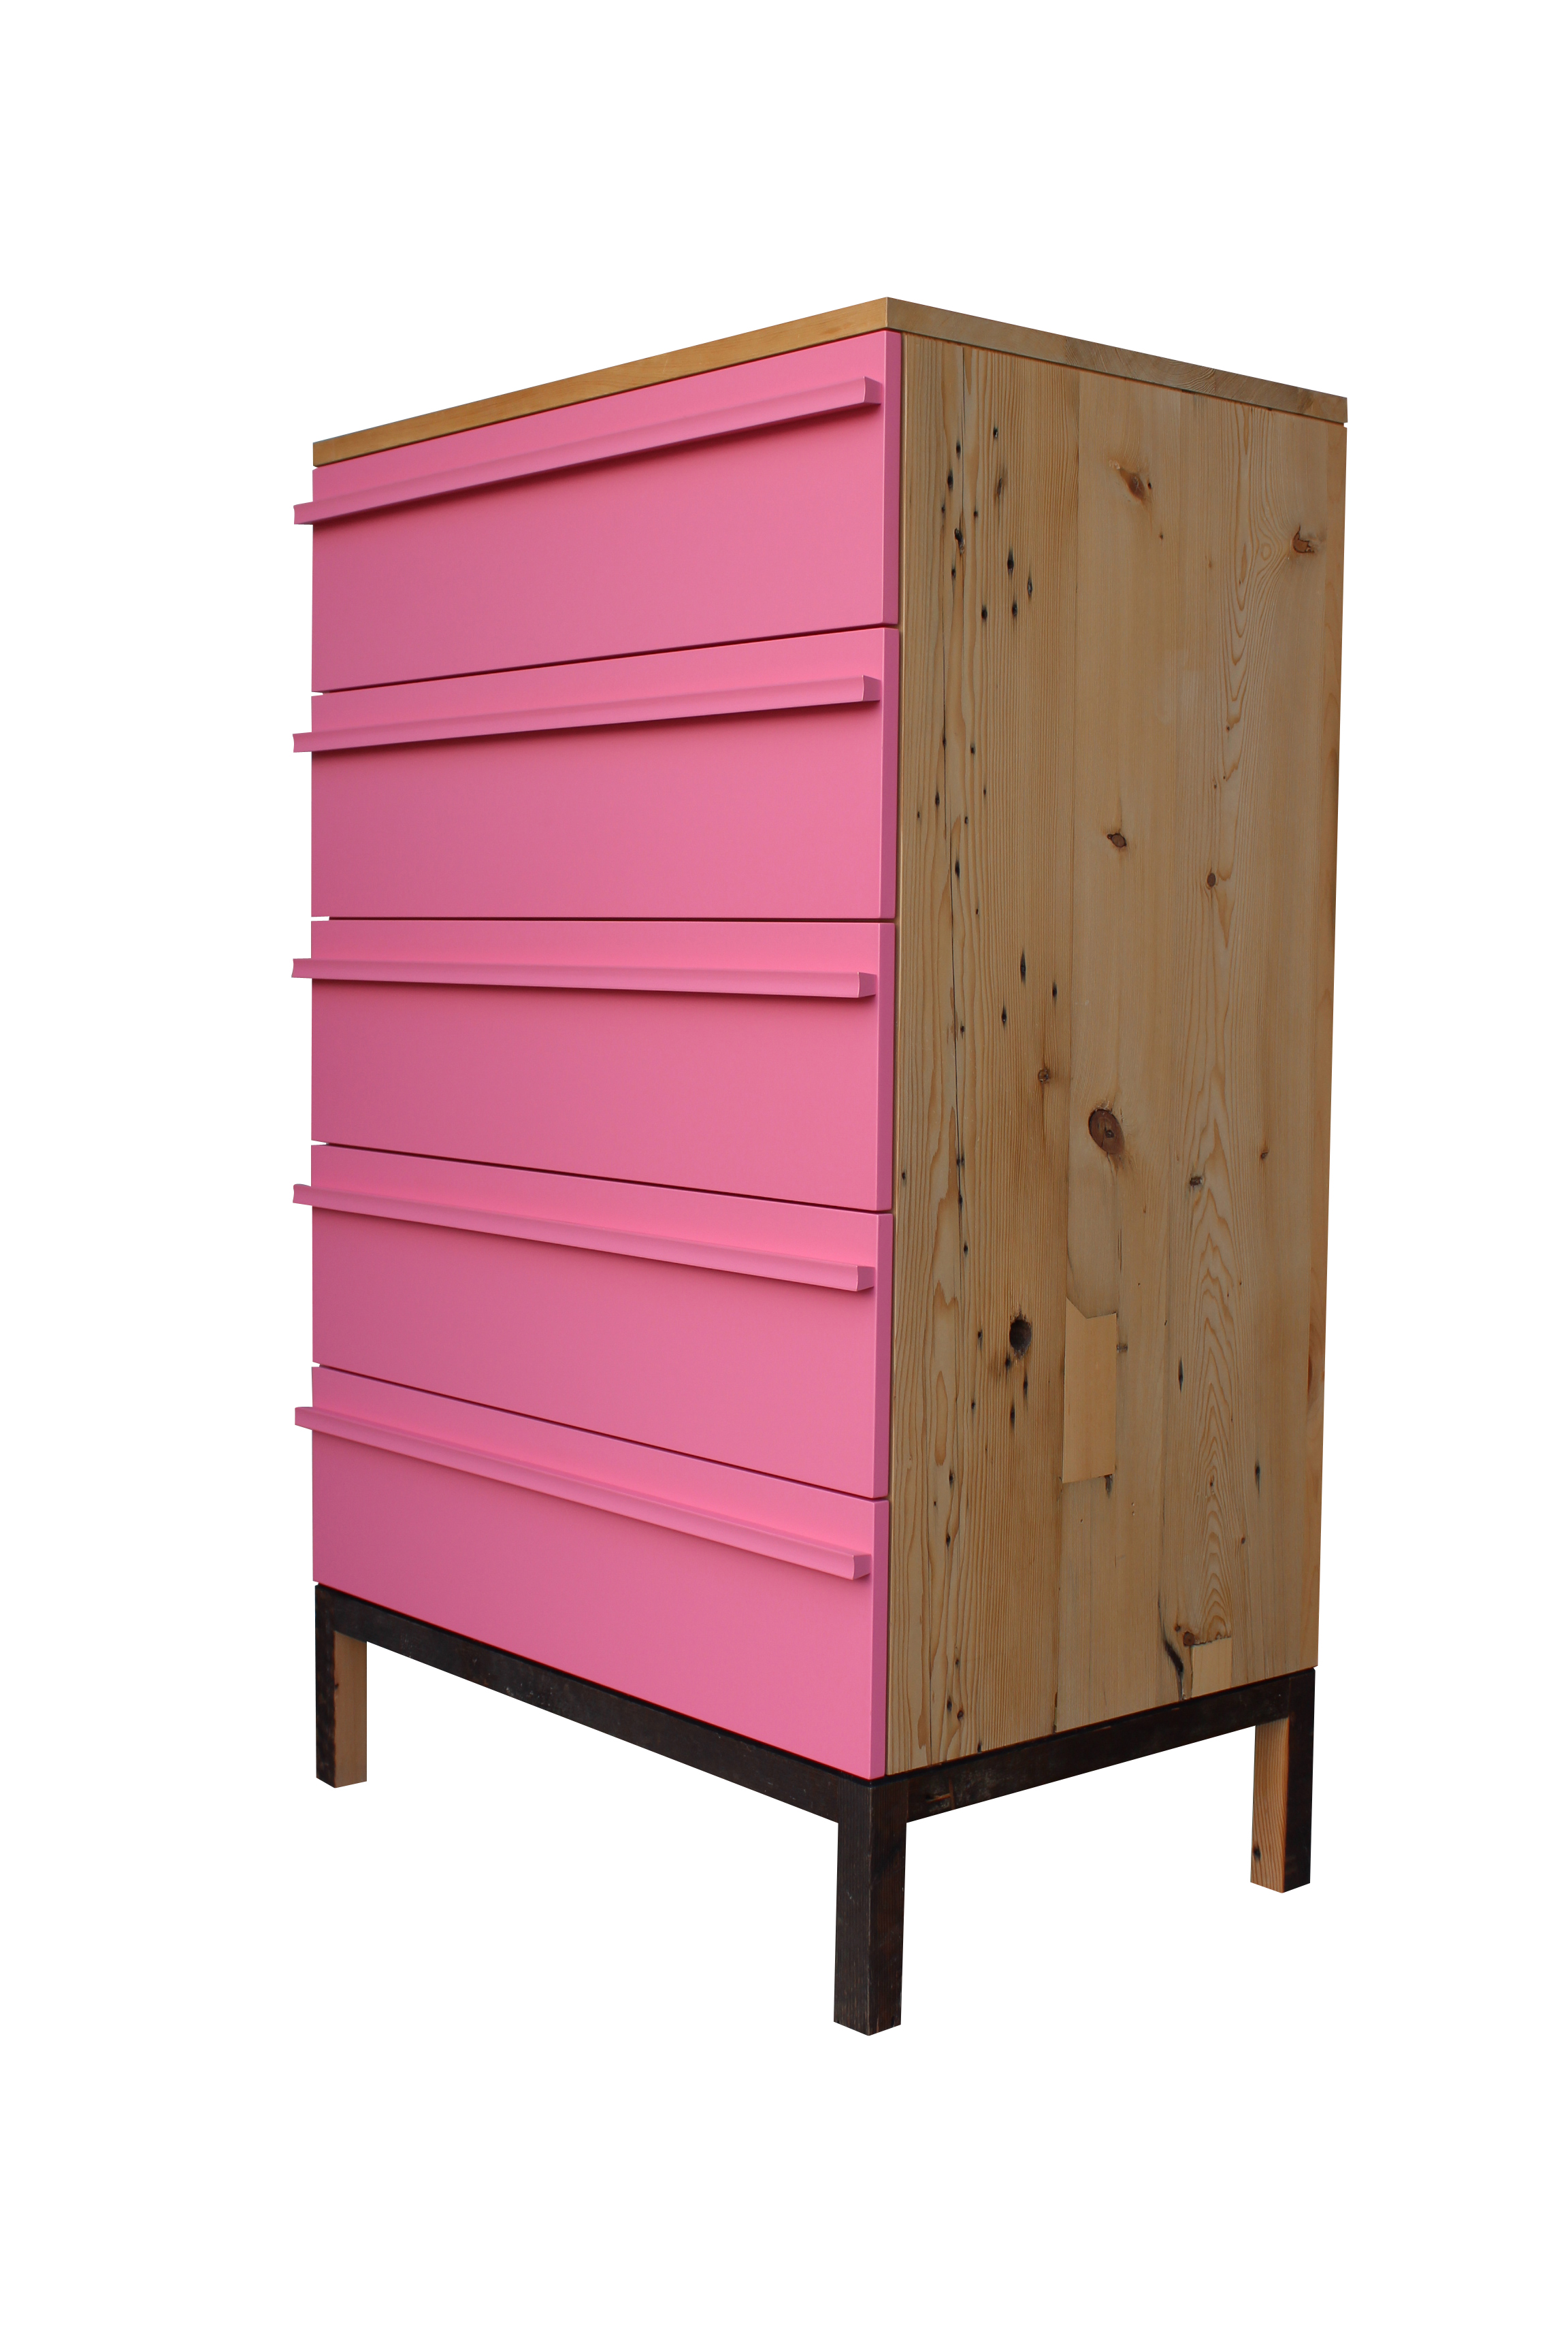 pink dresser, console photos 2014 015.JPG